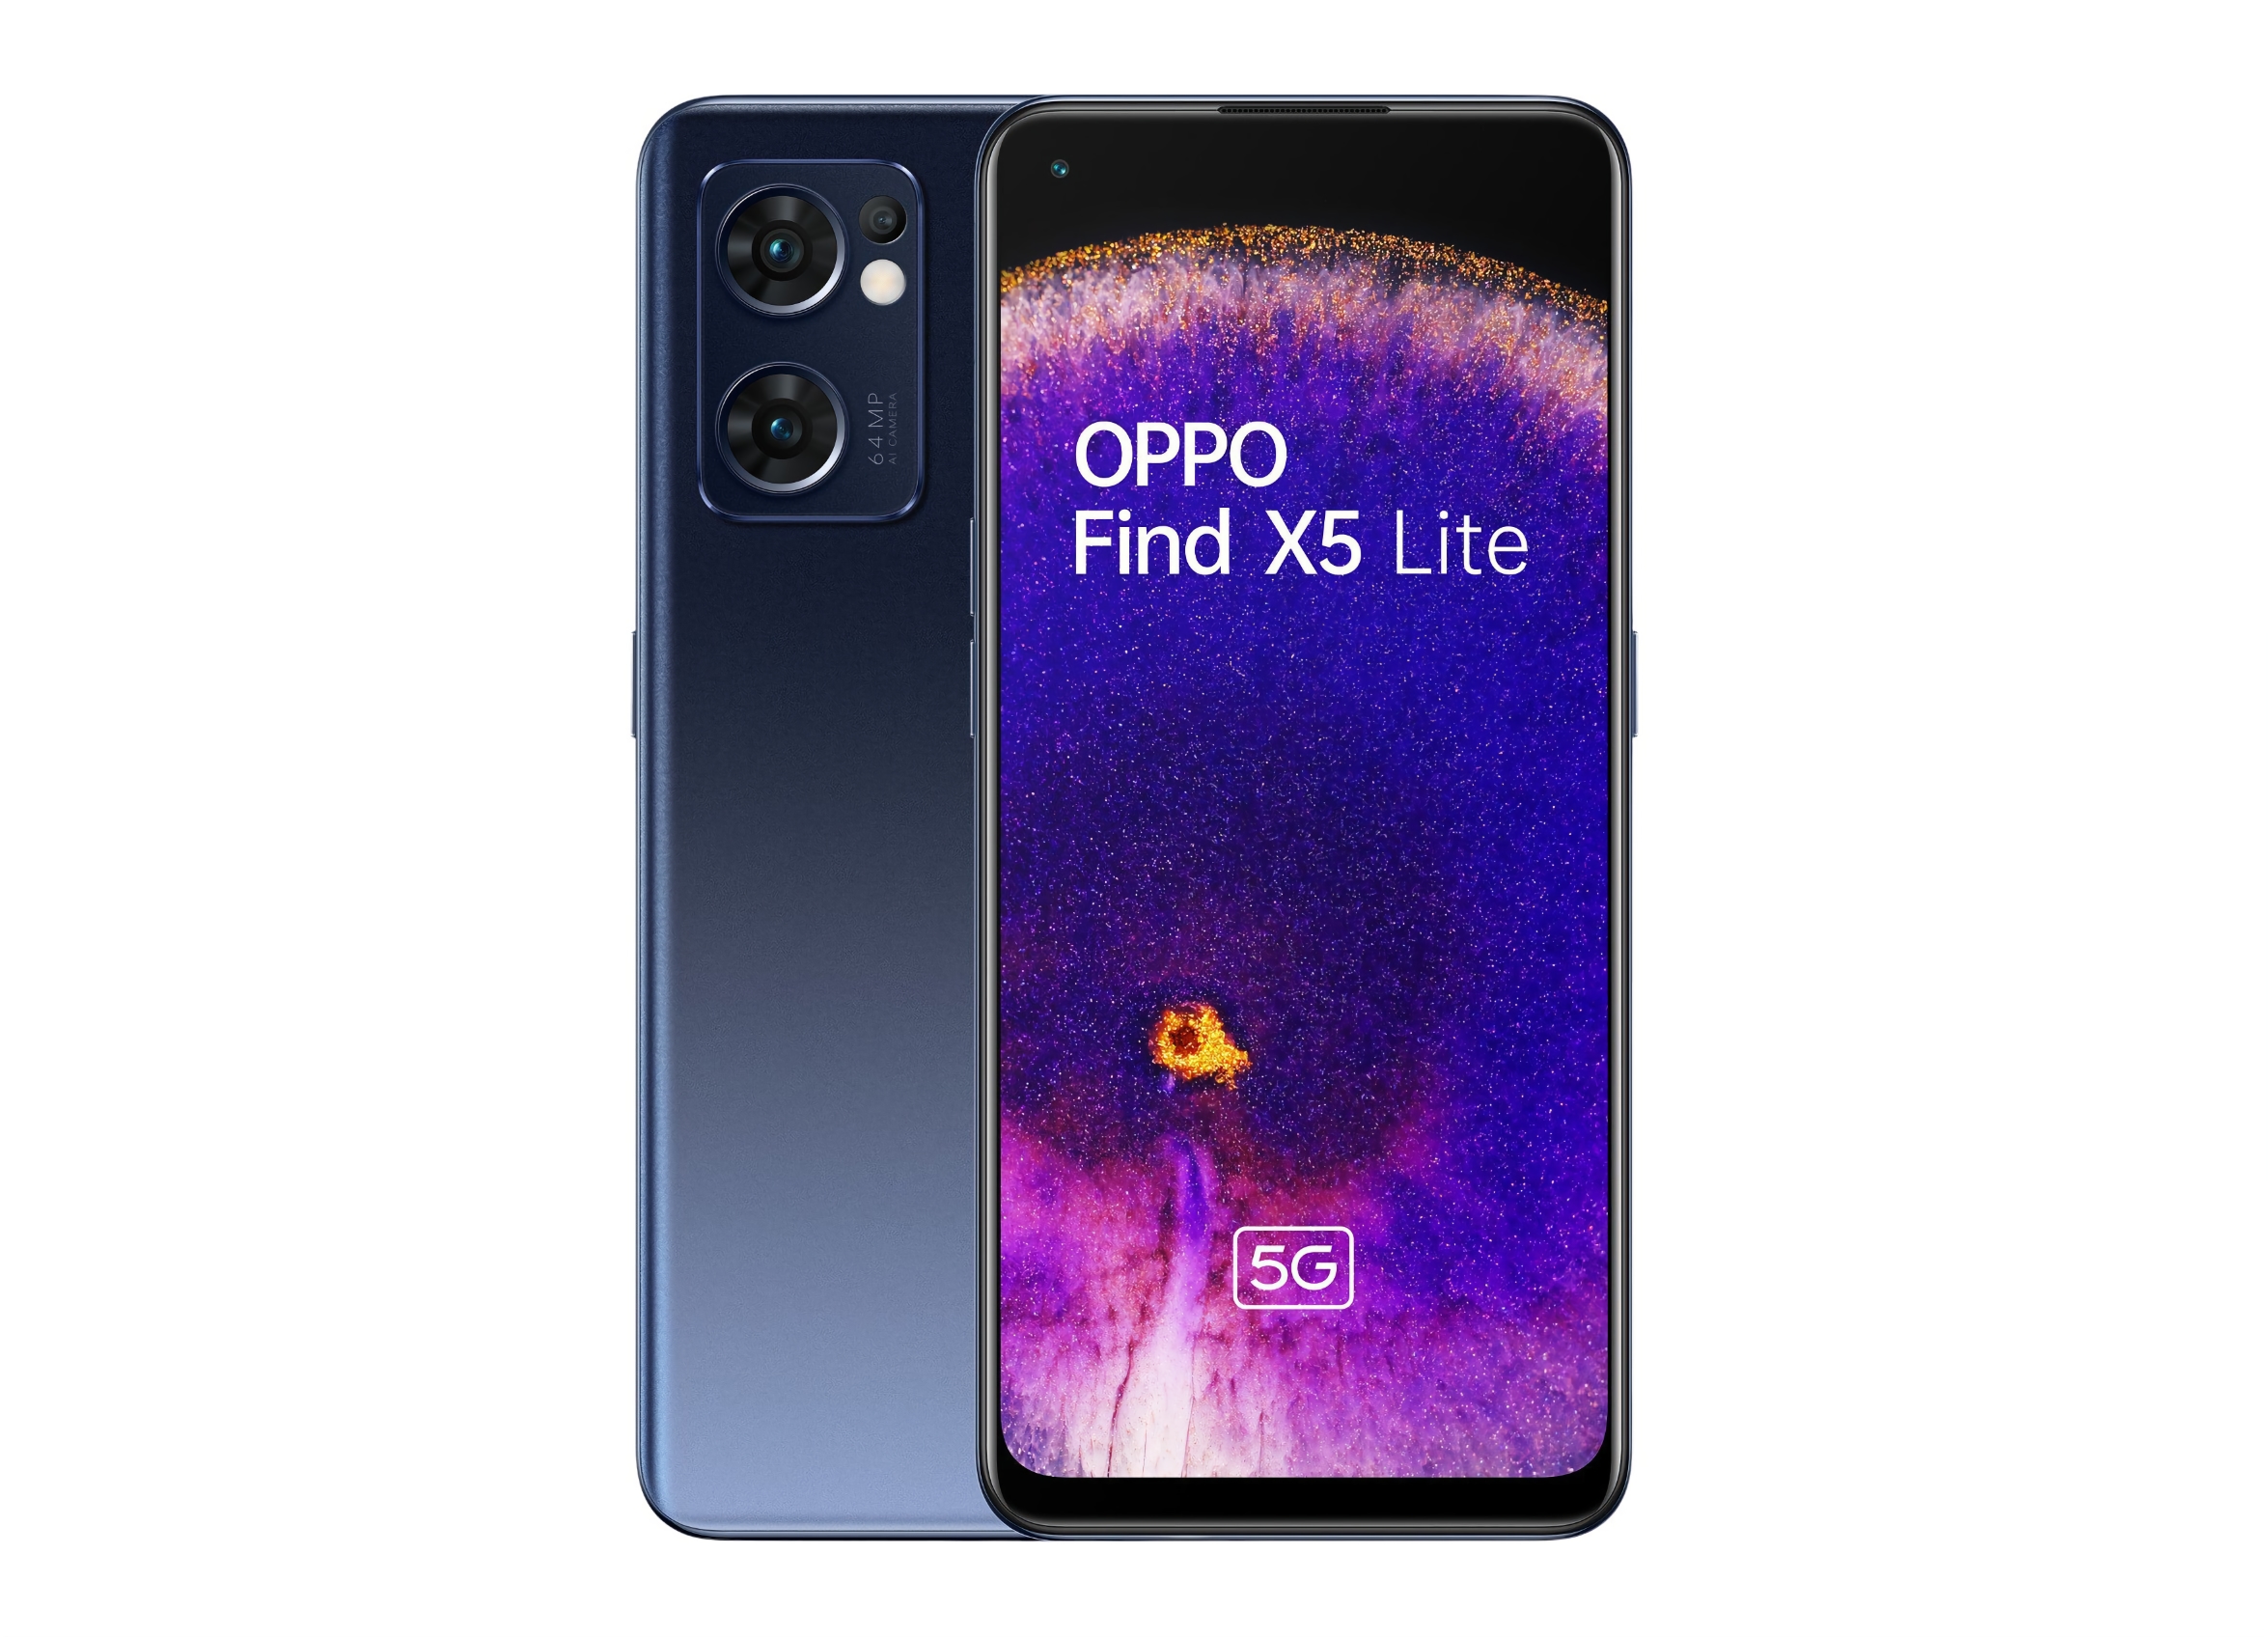 OPPO Reno 7-Kopie: Insider enthüllt Renderings von OPPO Find X5 Lite mit Flachbildschirm, Dreifachkamera und zwei Farben